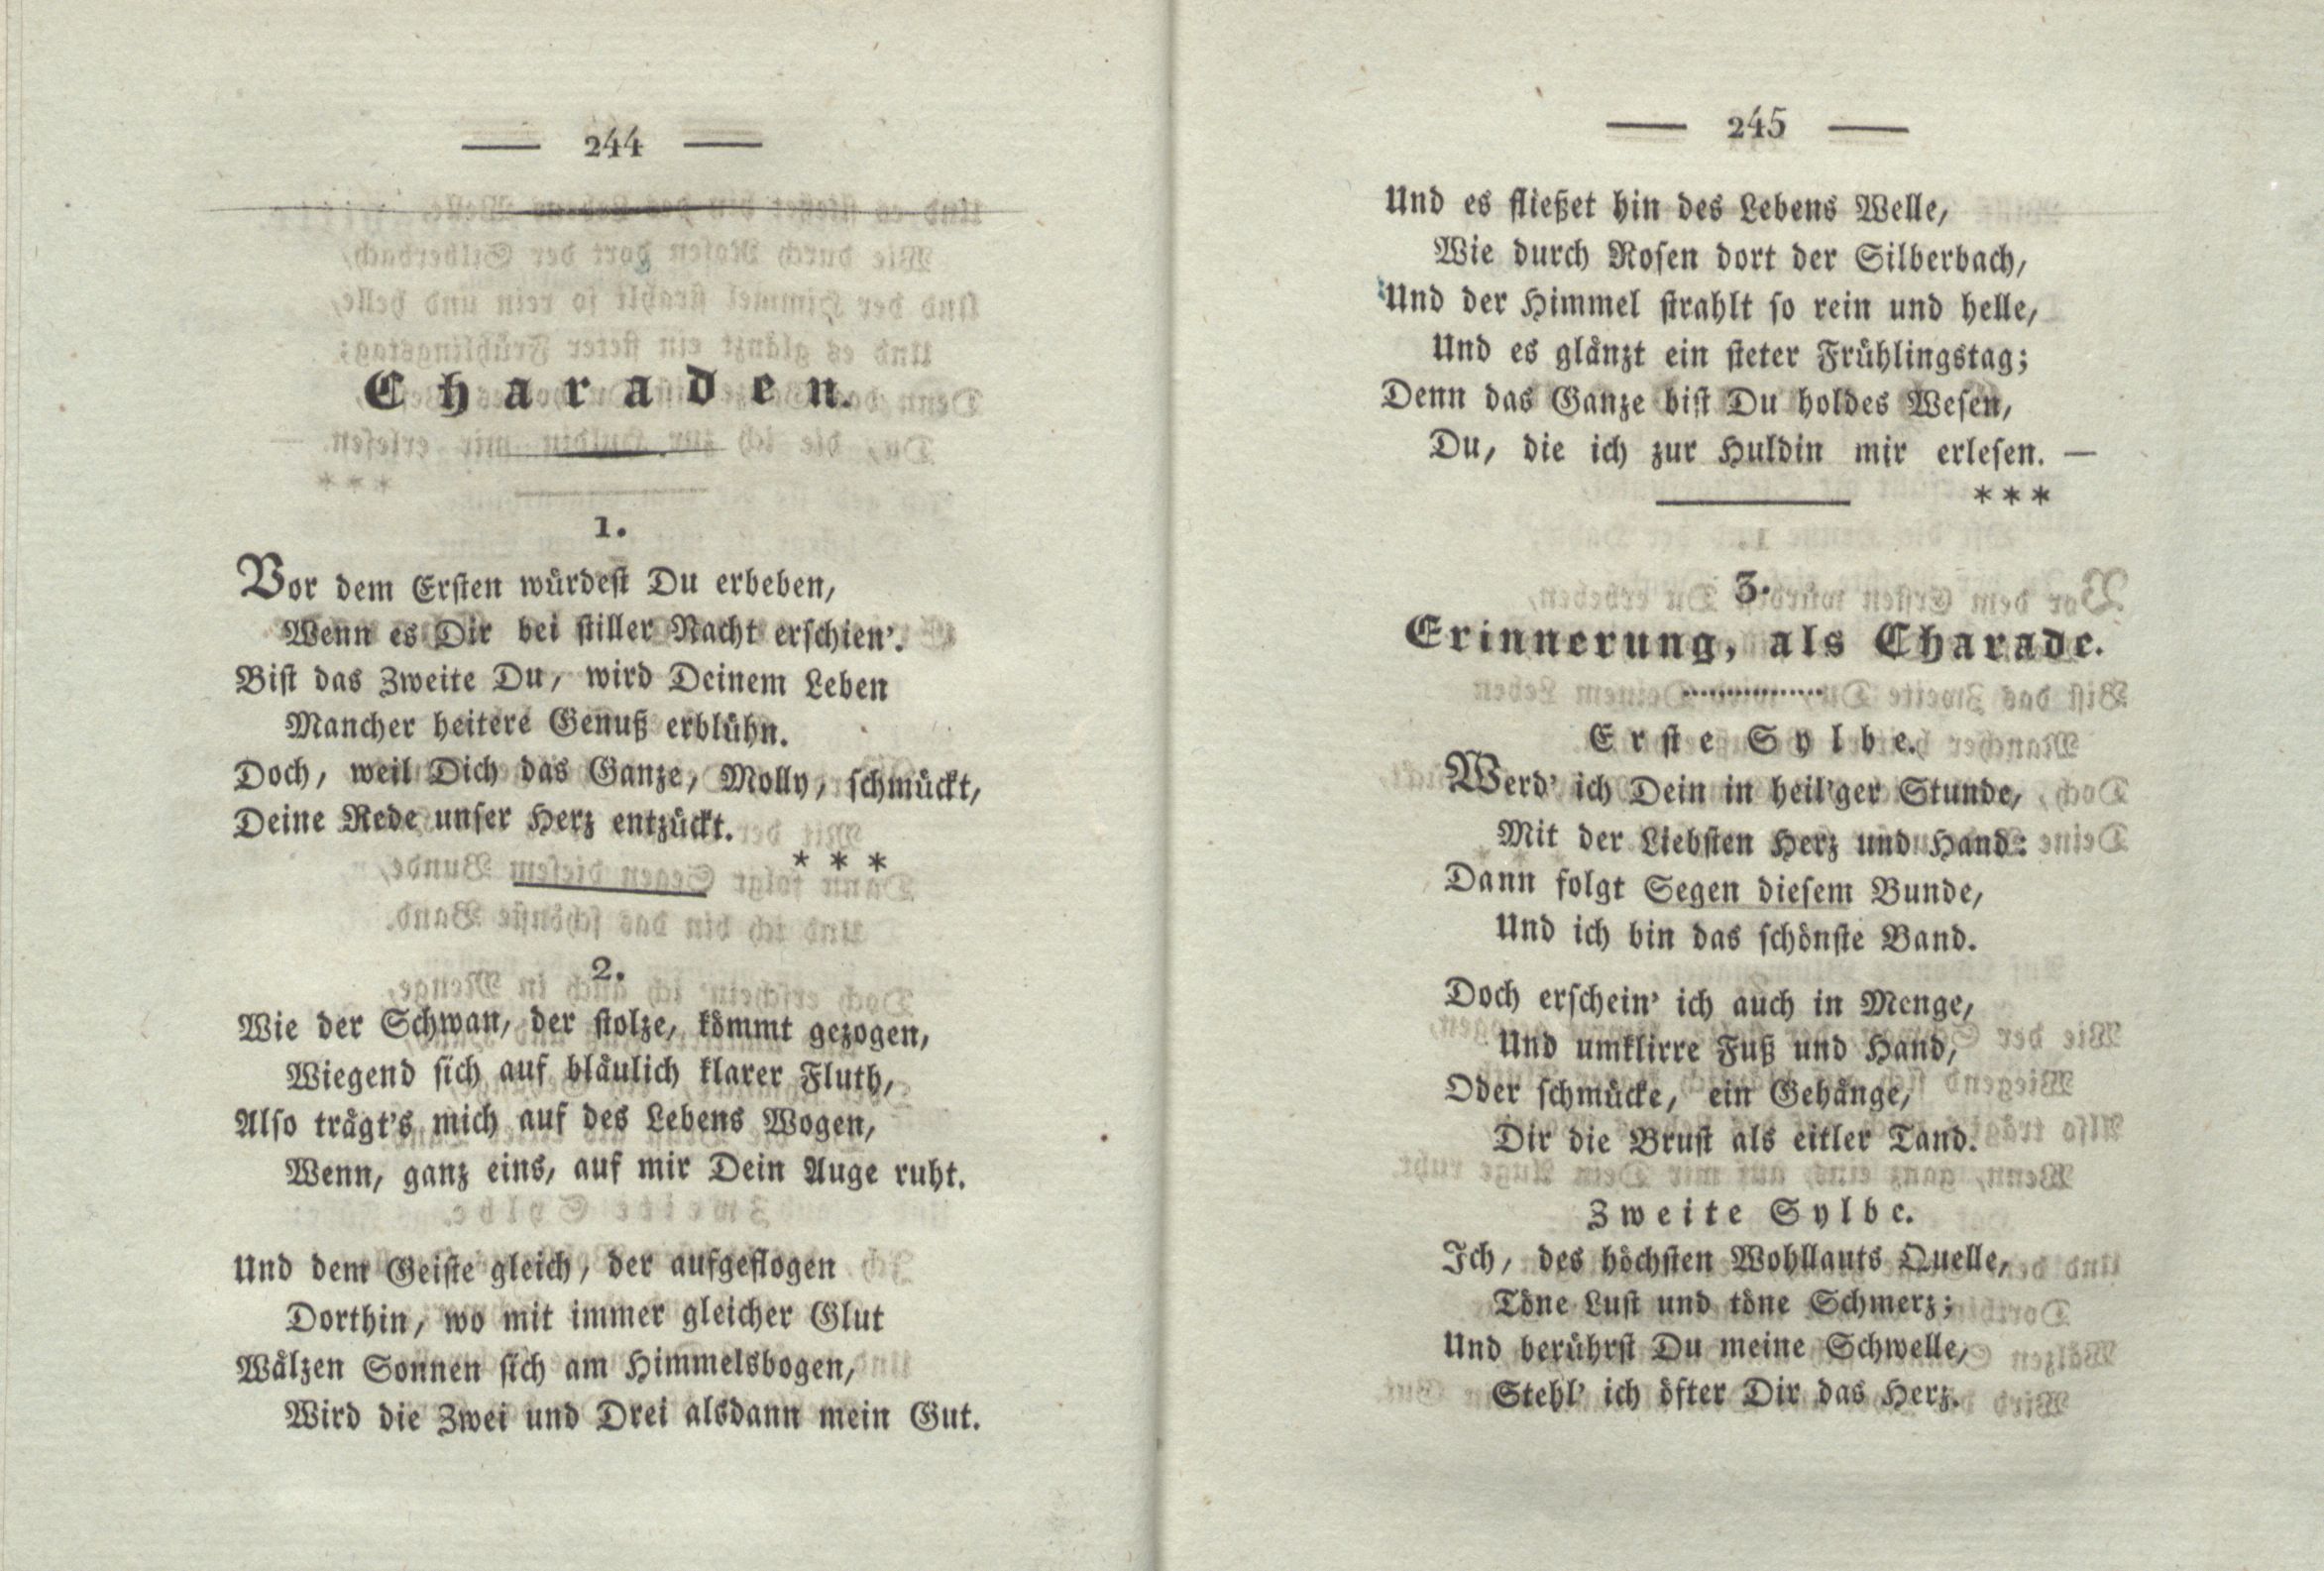 Erinnerung, als Charade (1825) | 1. (244-245) Haupttext